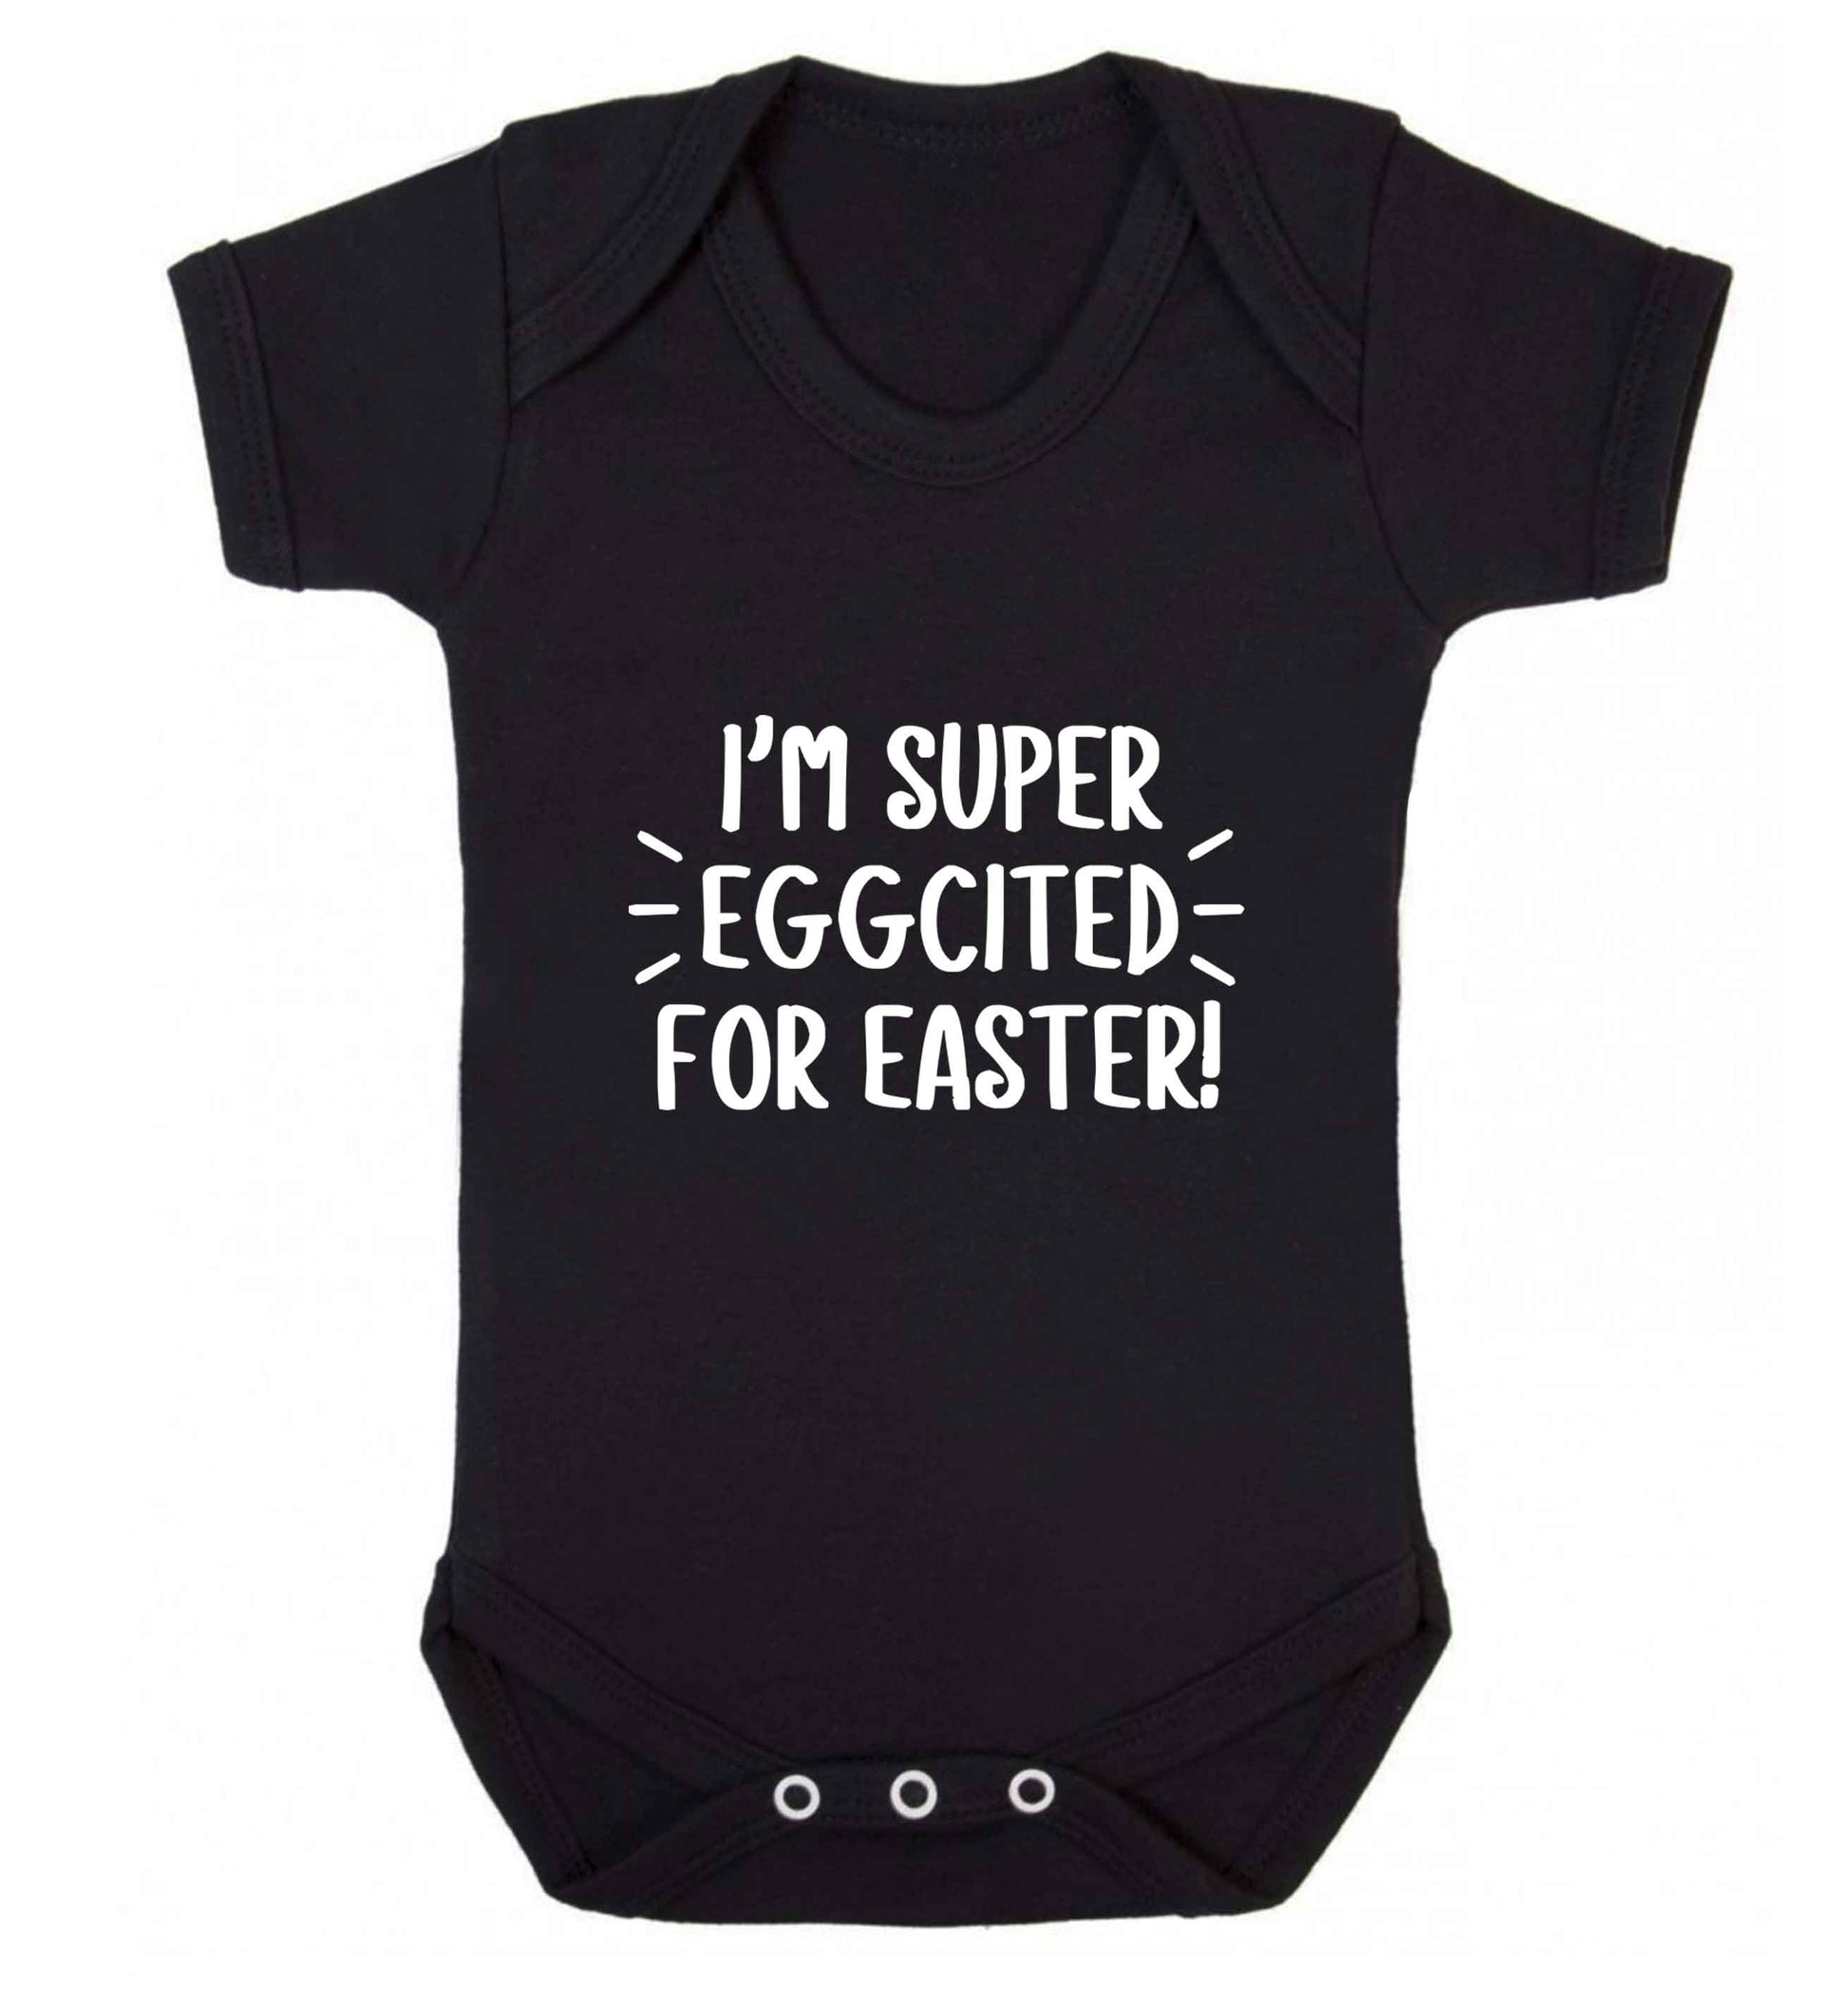 I'm super eggcited for Easter baby vest black 18-24 months